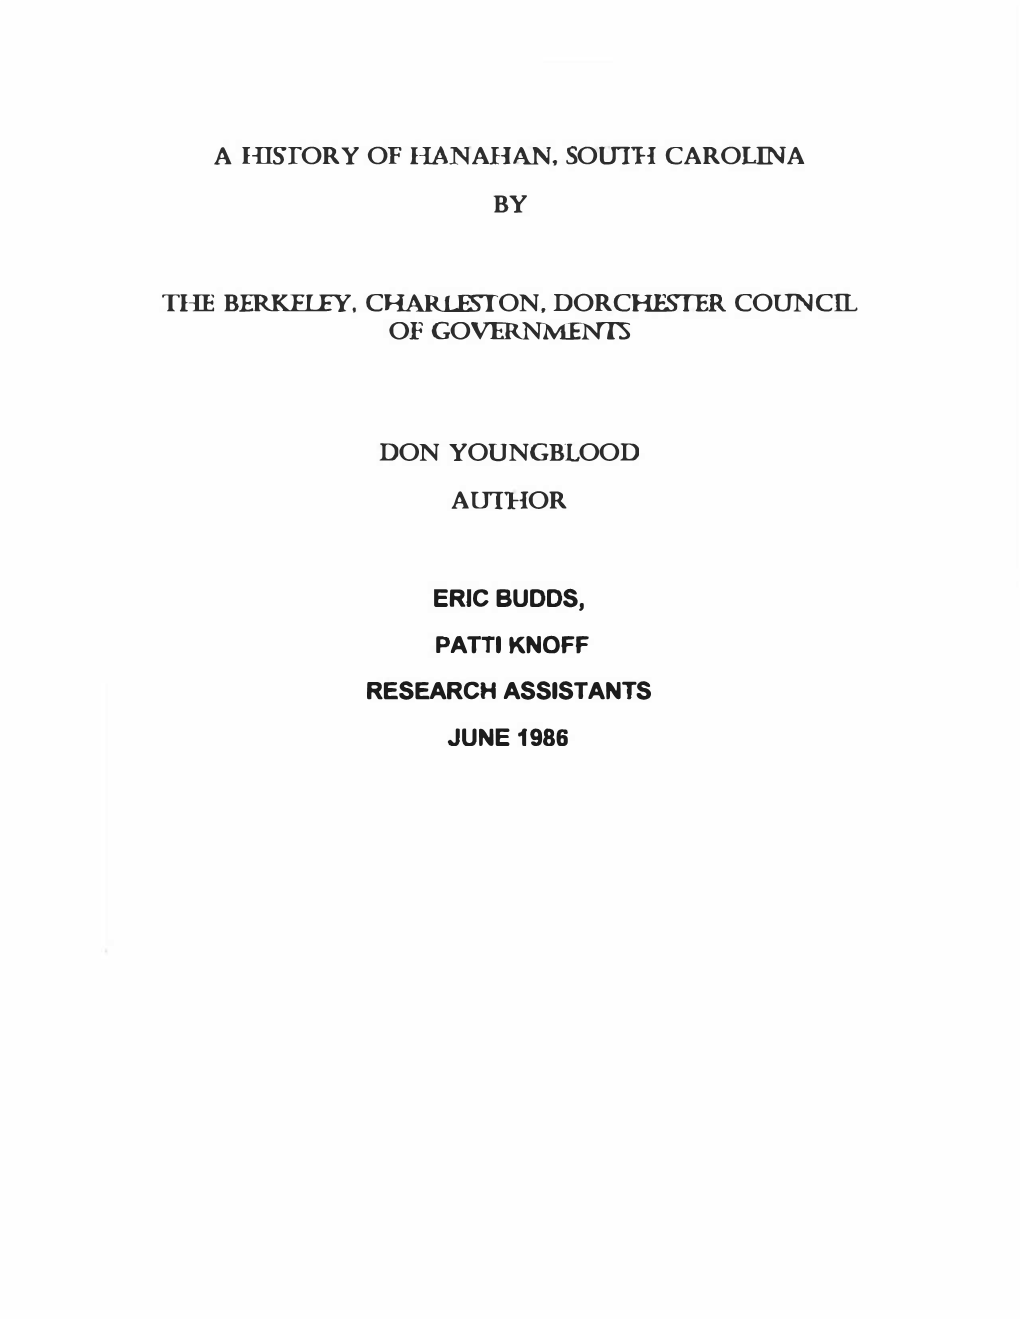 A History of Hanahan, South Carolina